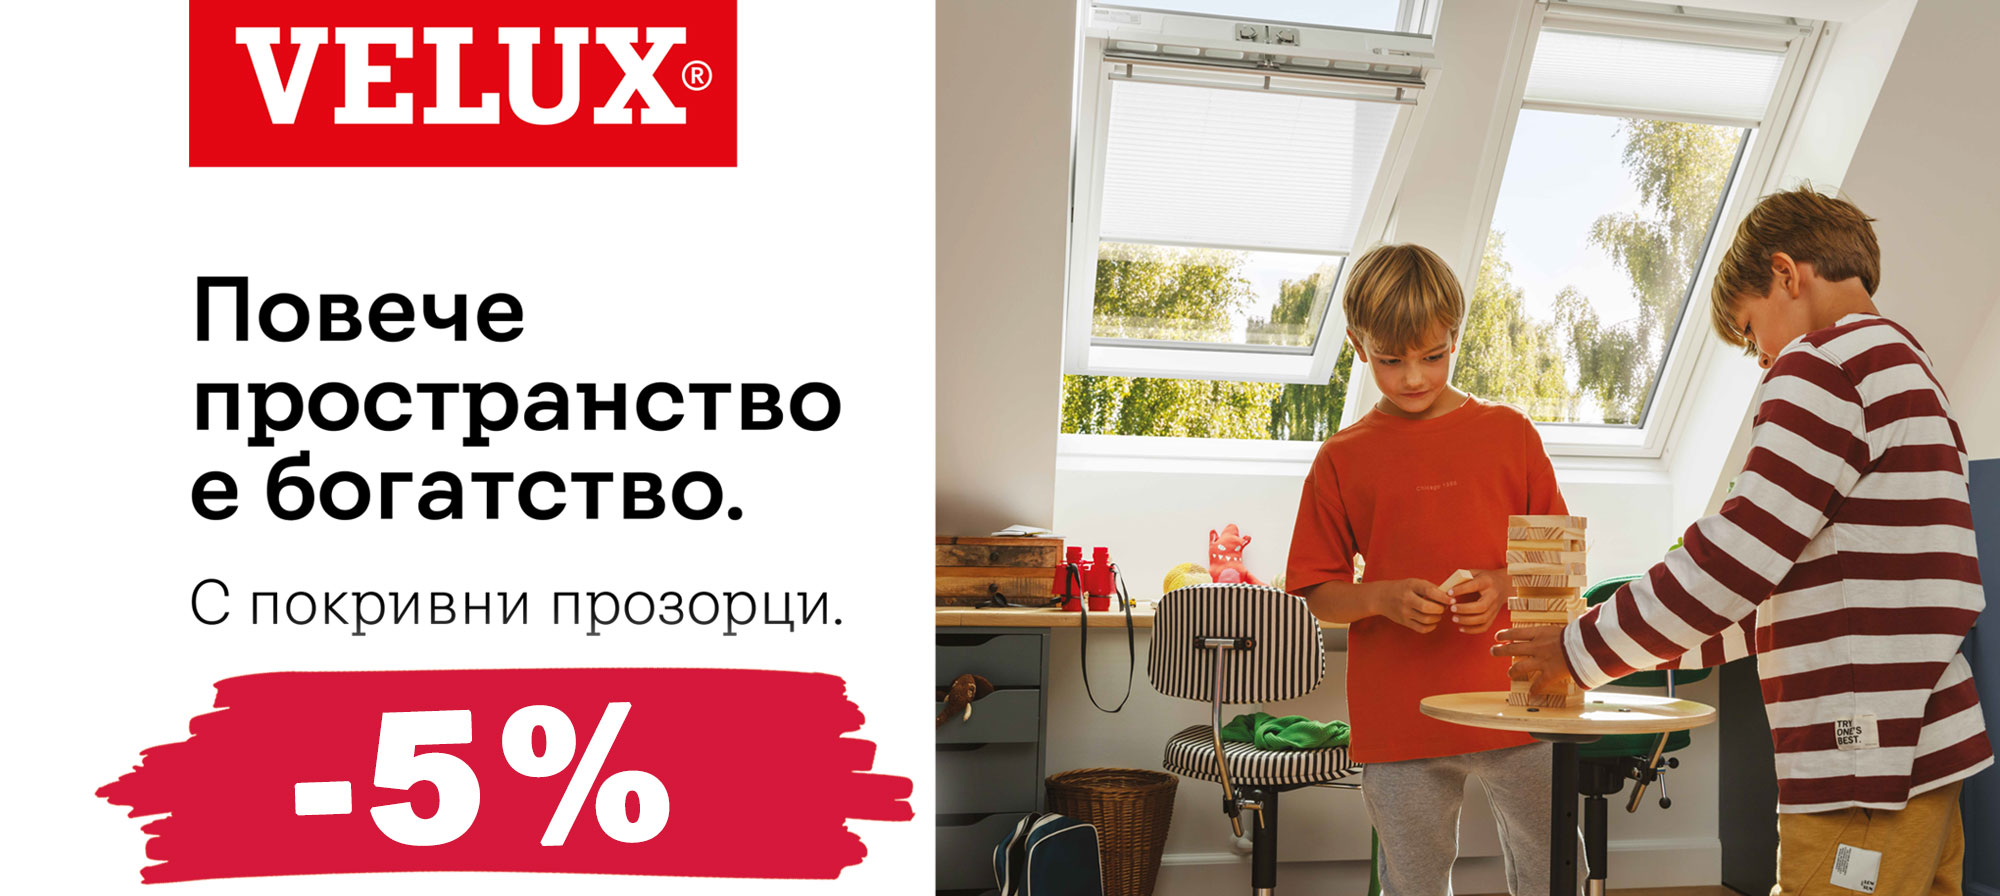 Покривни прозорци VELUX с 5 % отстъпка